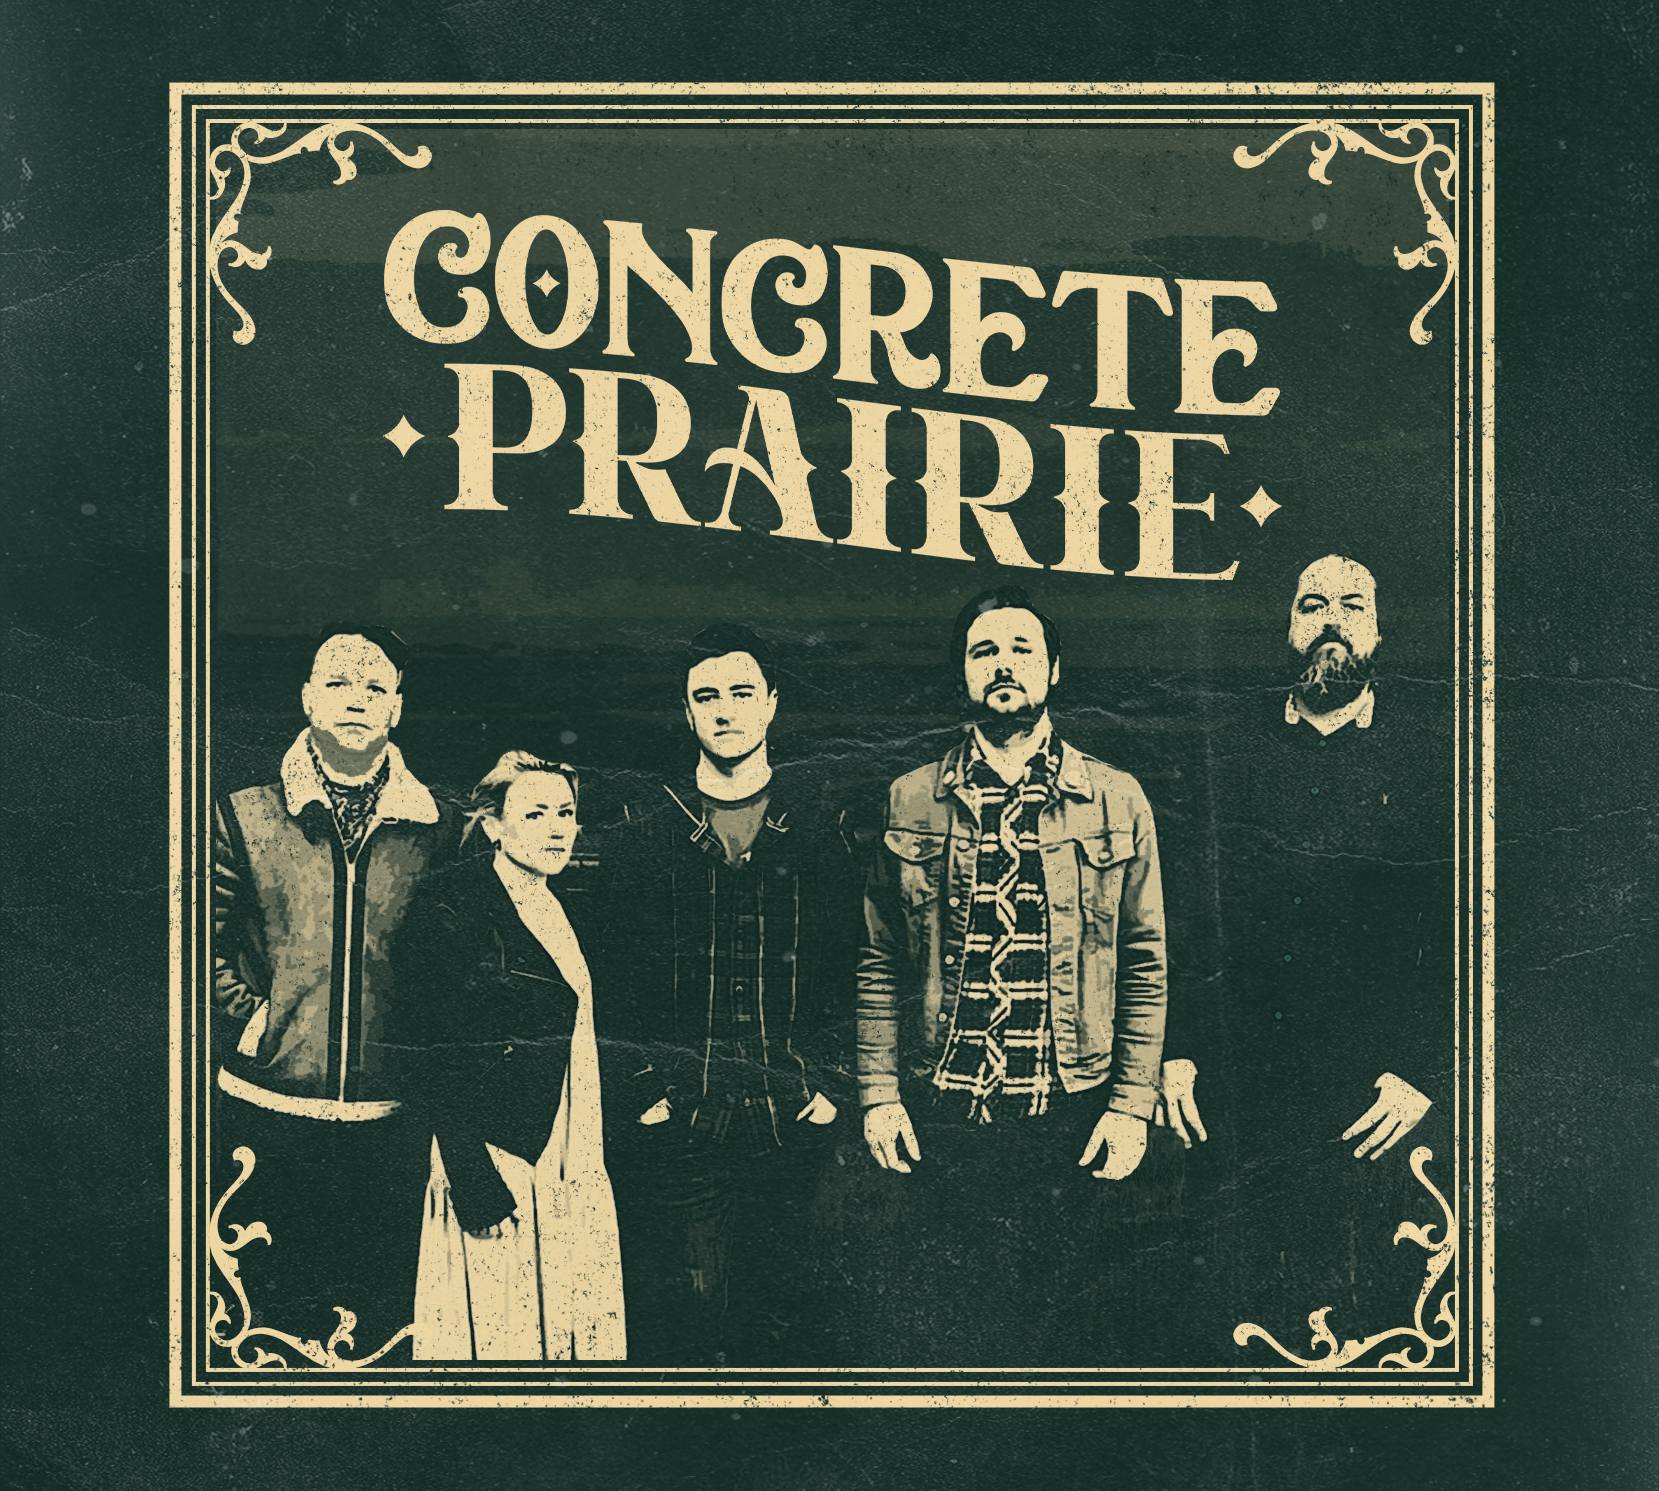 Concrete Prairie – Concrete Prairie